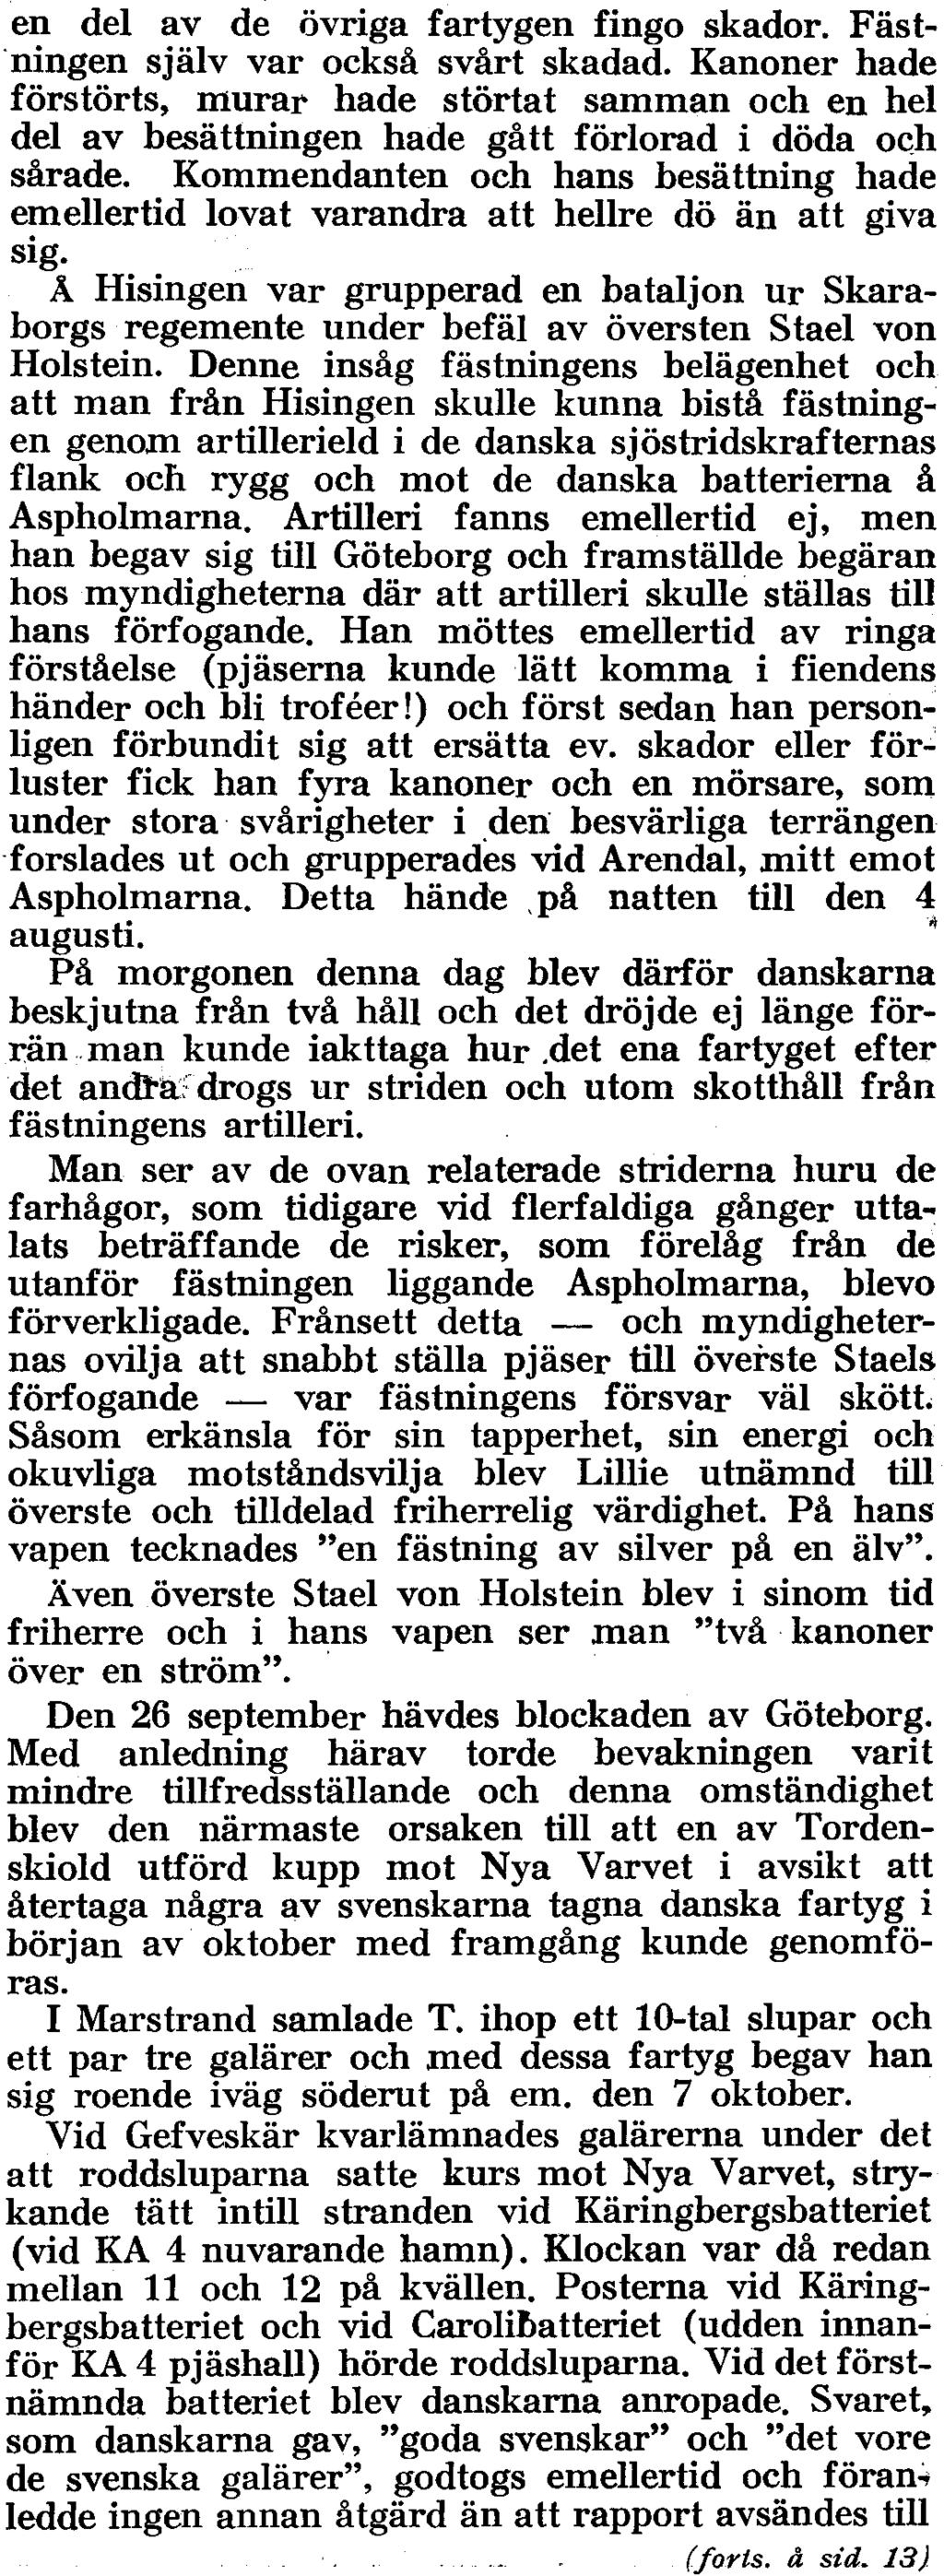 (forts. fr. sl:d. 7) Den 31 juli seglade T. från Marstrand till Rivöfjorden. Hans styrka bestod av 7 linjeskepp, 2 fregatter, 5 skottpråmar, 2 flytande batterier, ett antal galärer m.